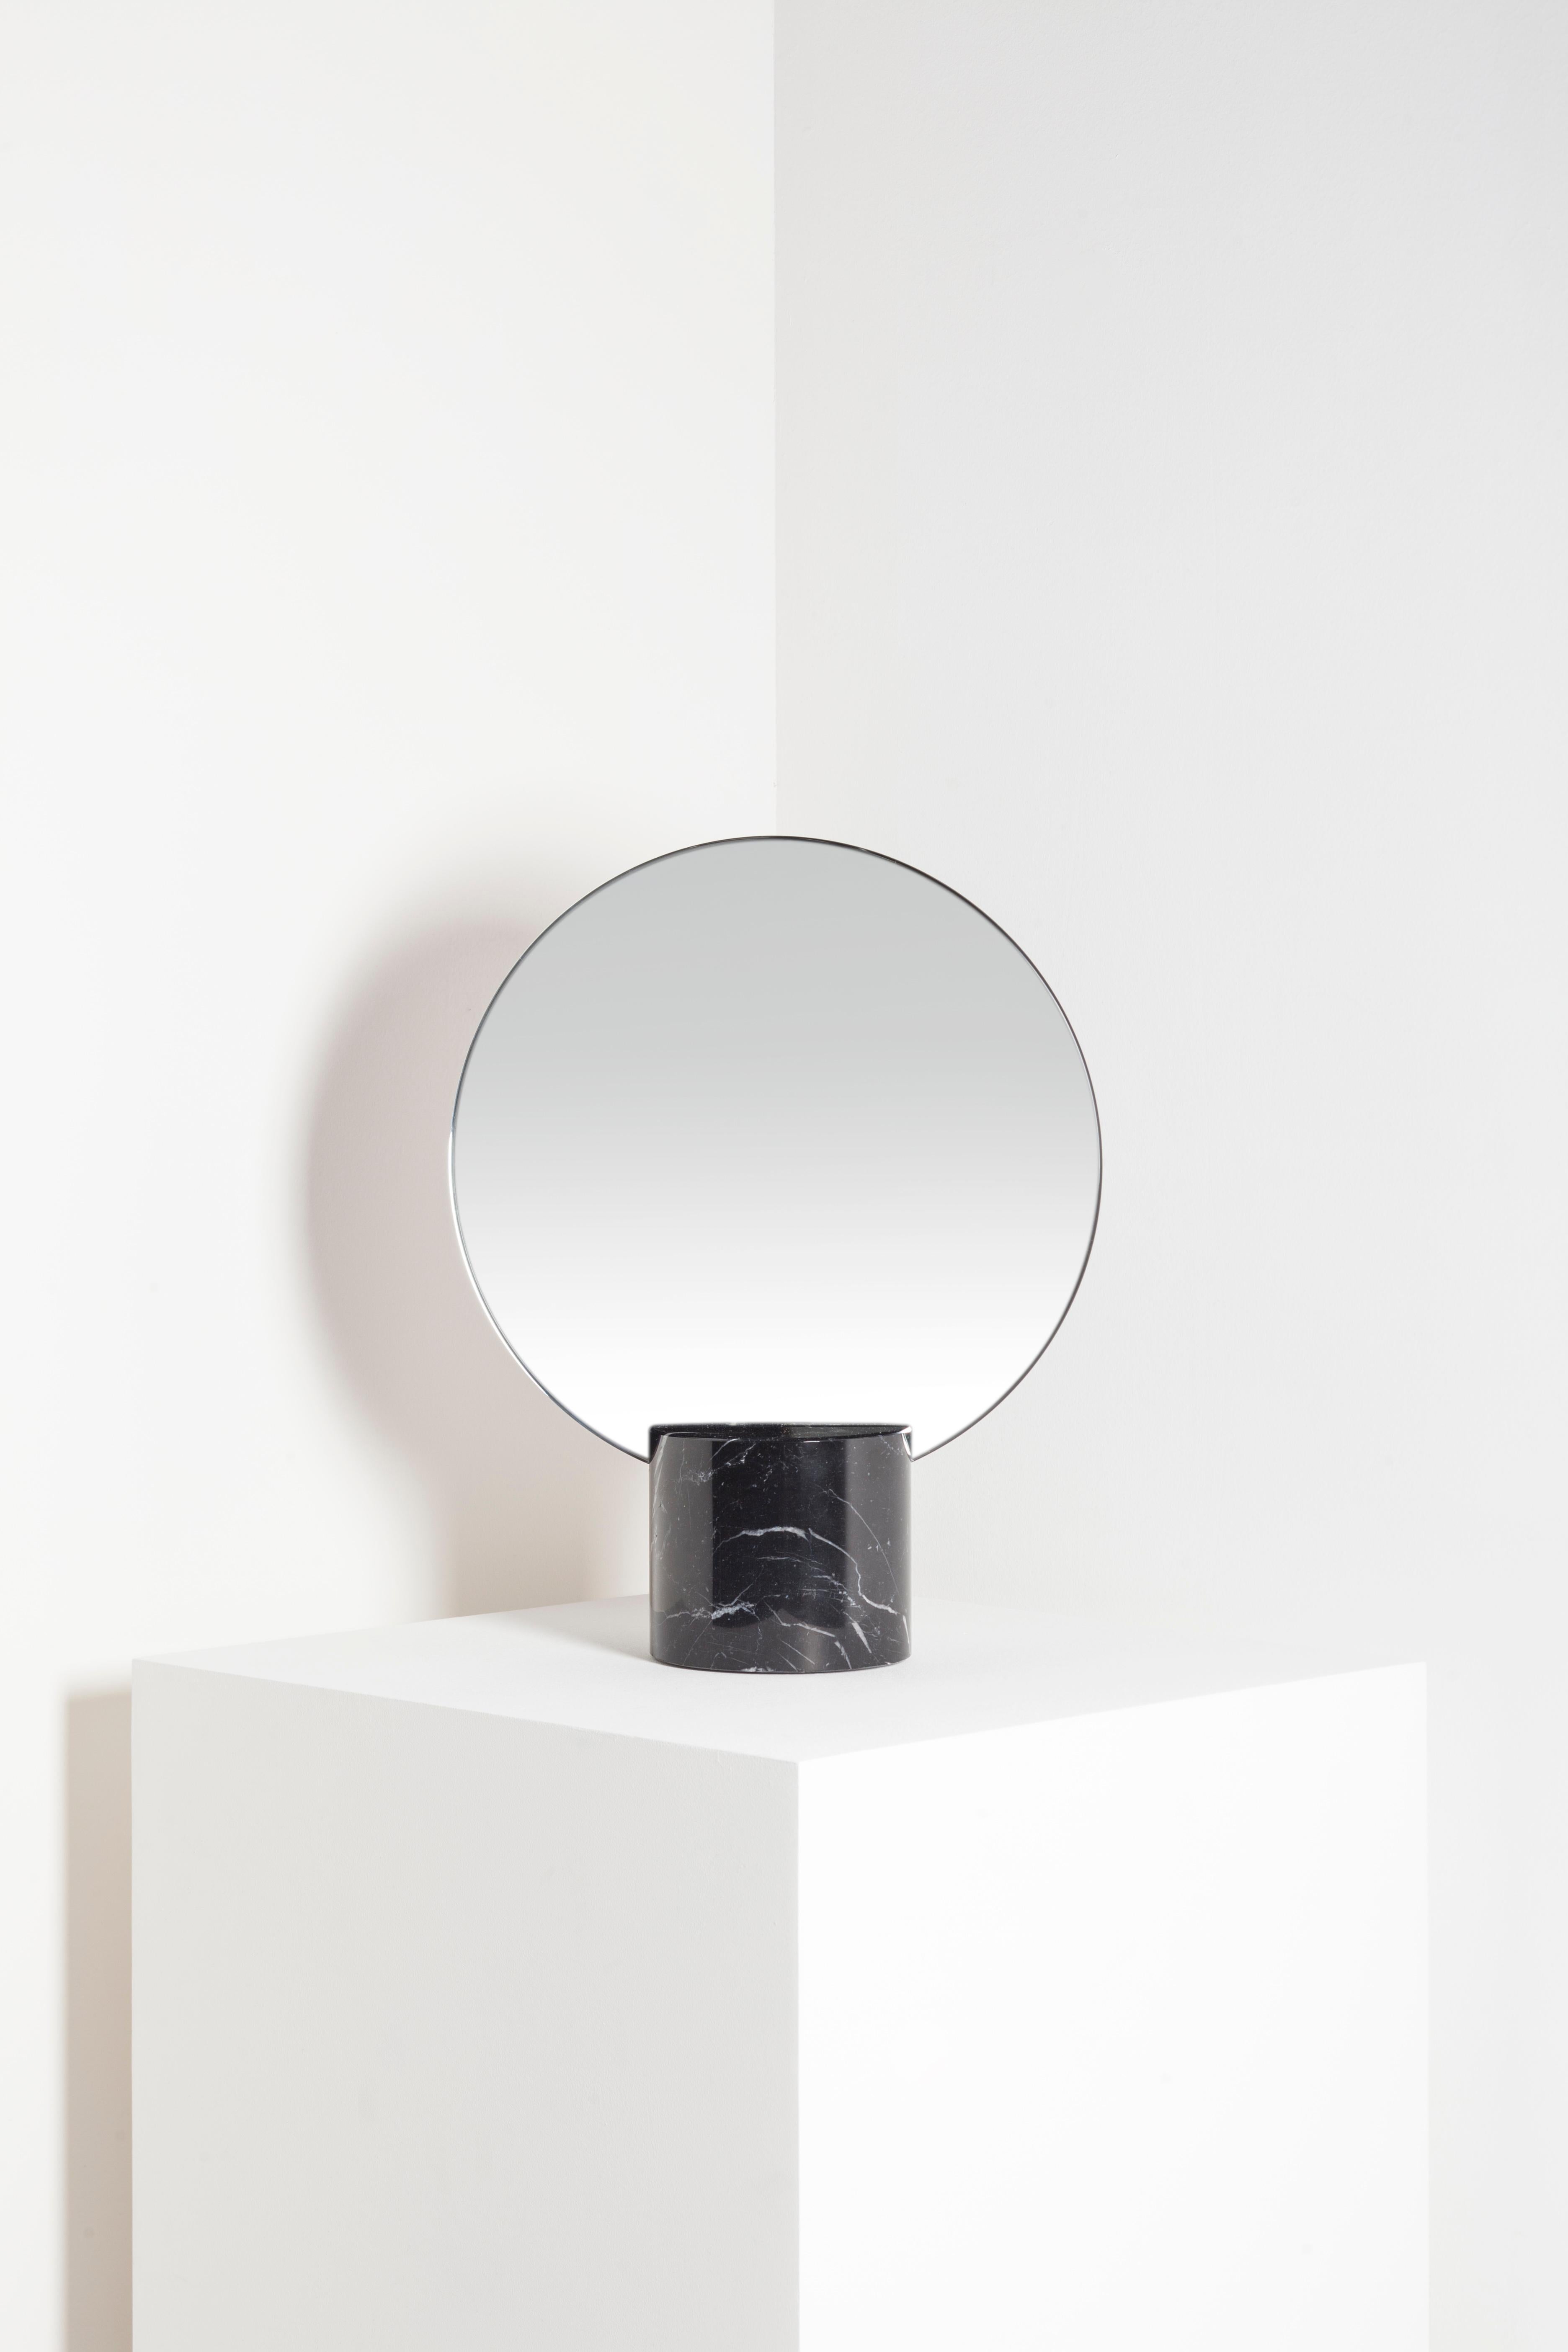 Sun mirror ist ein Tischspiegel im minimalistischen Stil aus Marmor und Kupfer. Sie wurde von den alten Zivilisationen des Mittelmeerraums inspiriert, wo sie die Grundlagen des heutigen Schönheitsbegriffs der westlichen Kultur entwickelten. Josep